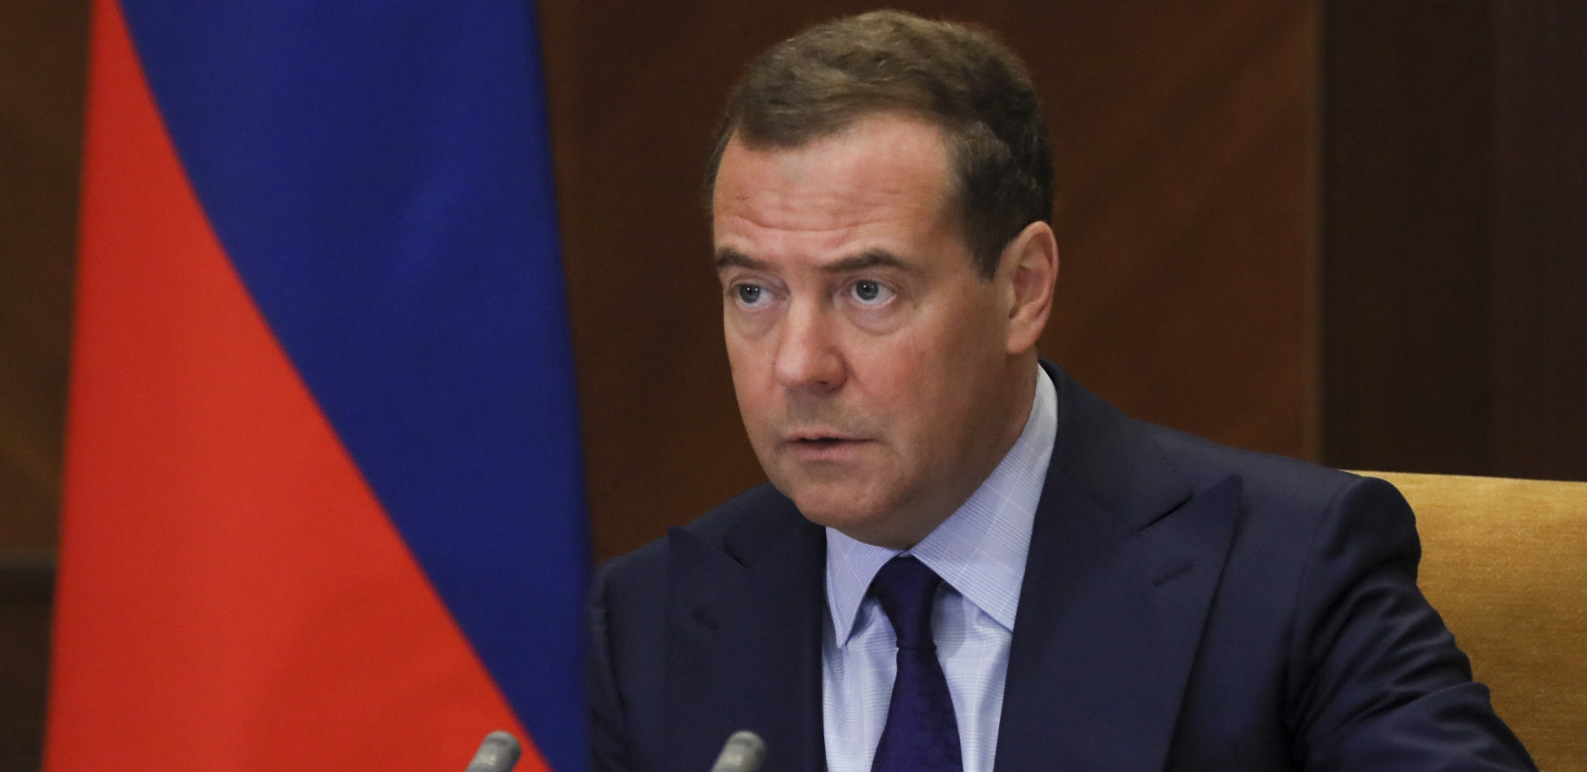 KAKVA SRAMOTA! Medvedev osuo paljbu po predsedniku Poljske